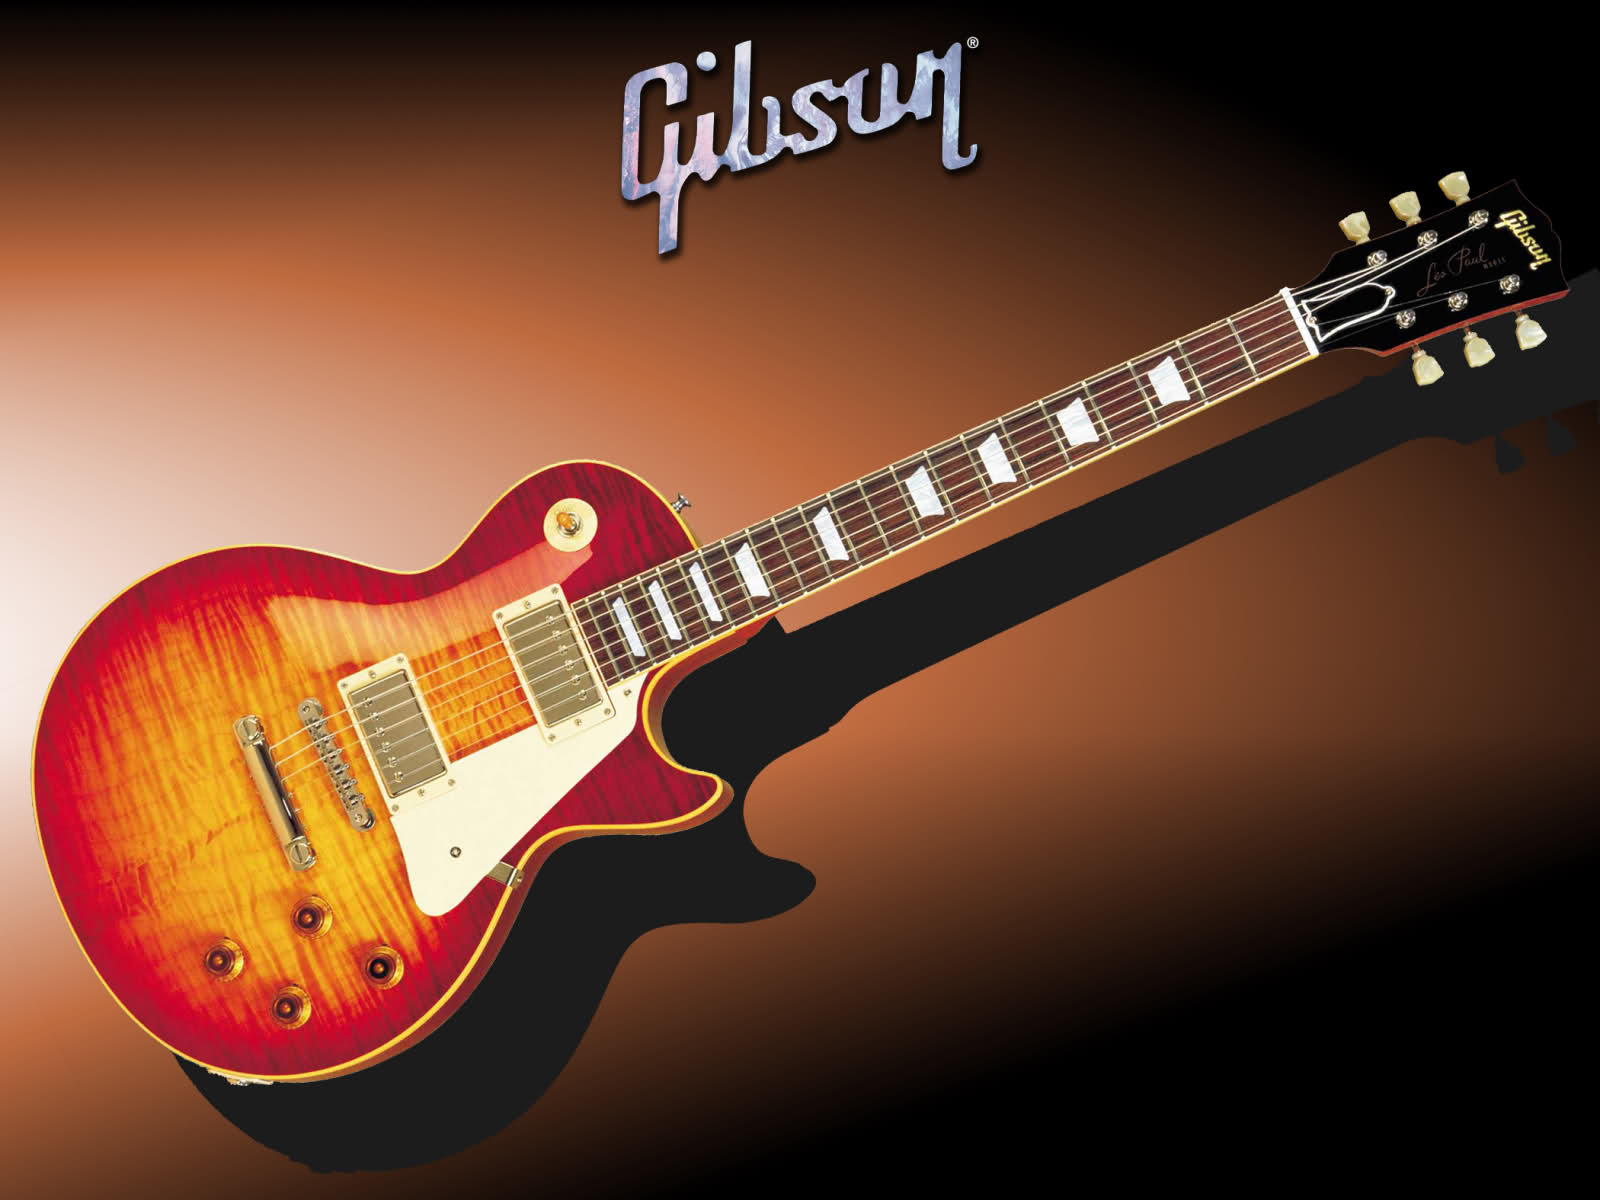 Gibson Guitar Wallpaper - WallpaperSafari